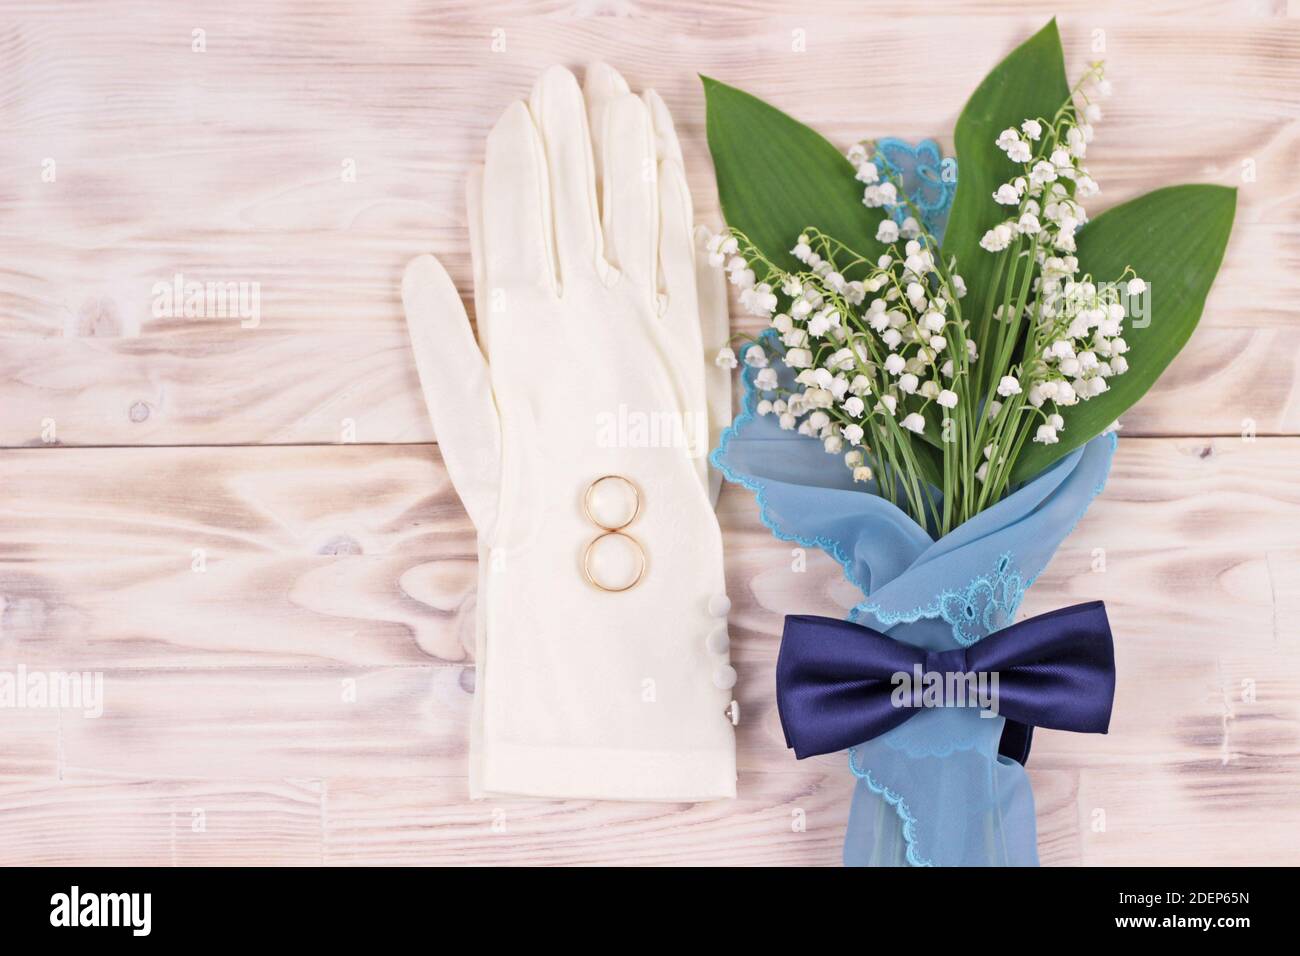 Ramo de flores lirio del valle en servilleta de color turquesa, guantes blancos de boda femenina y lazo azul en mesa rústica ligera.Tarjeta de felicitación de boda Foto de stock